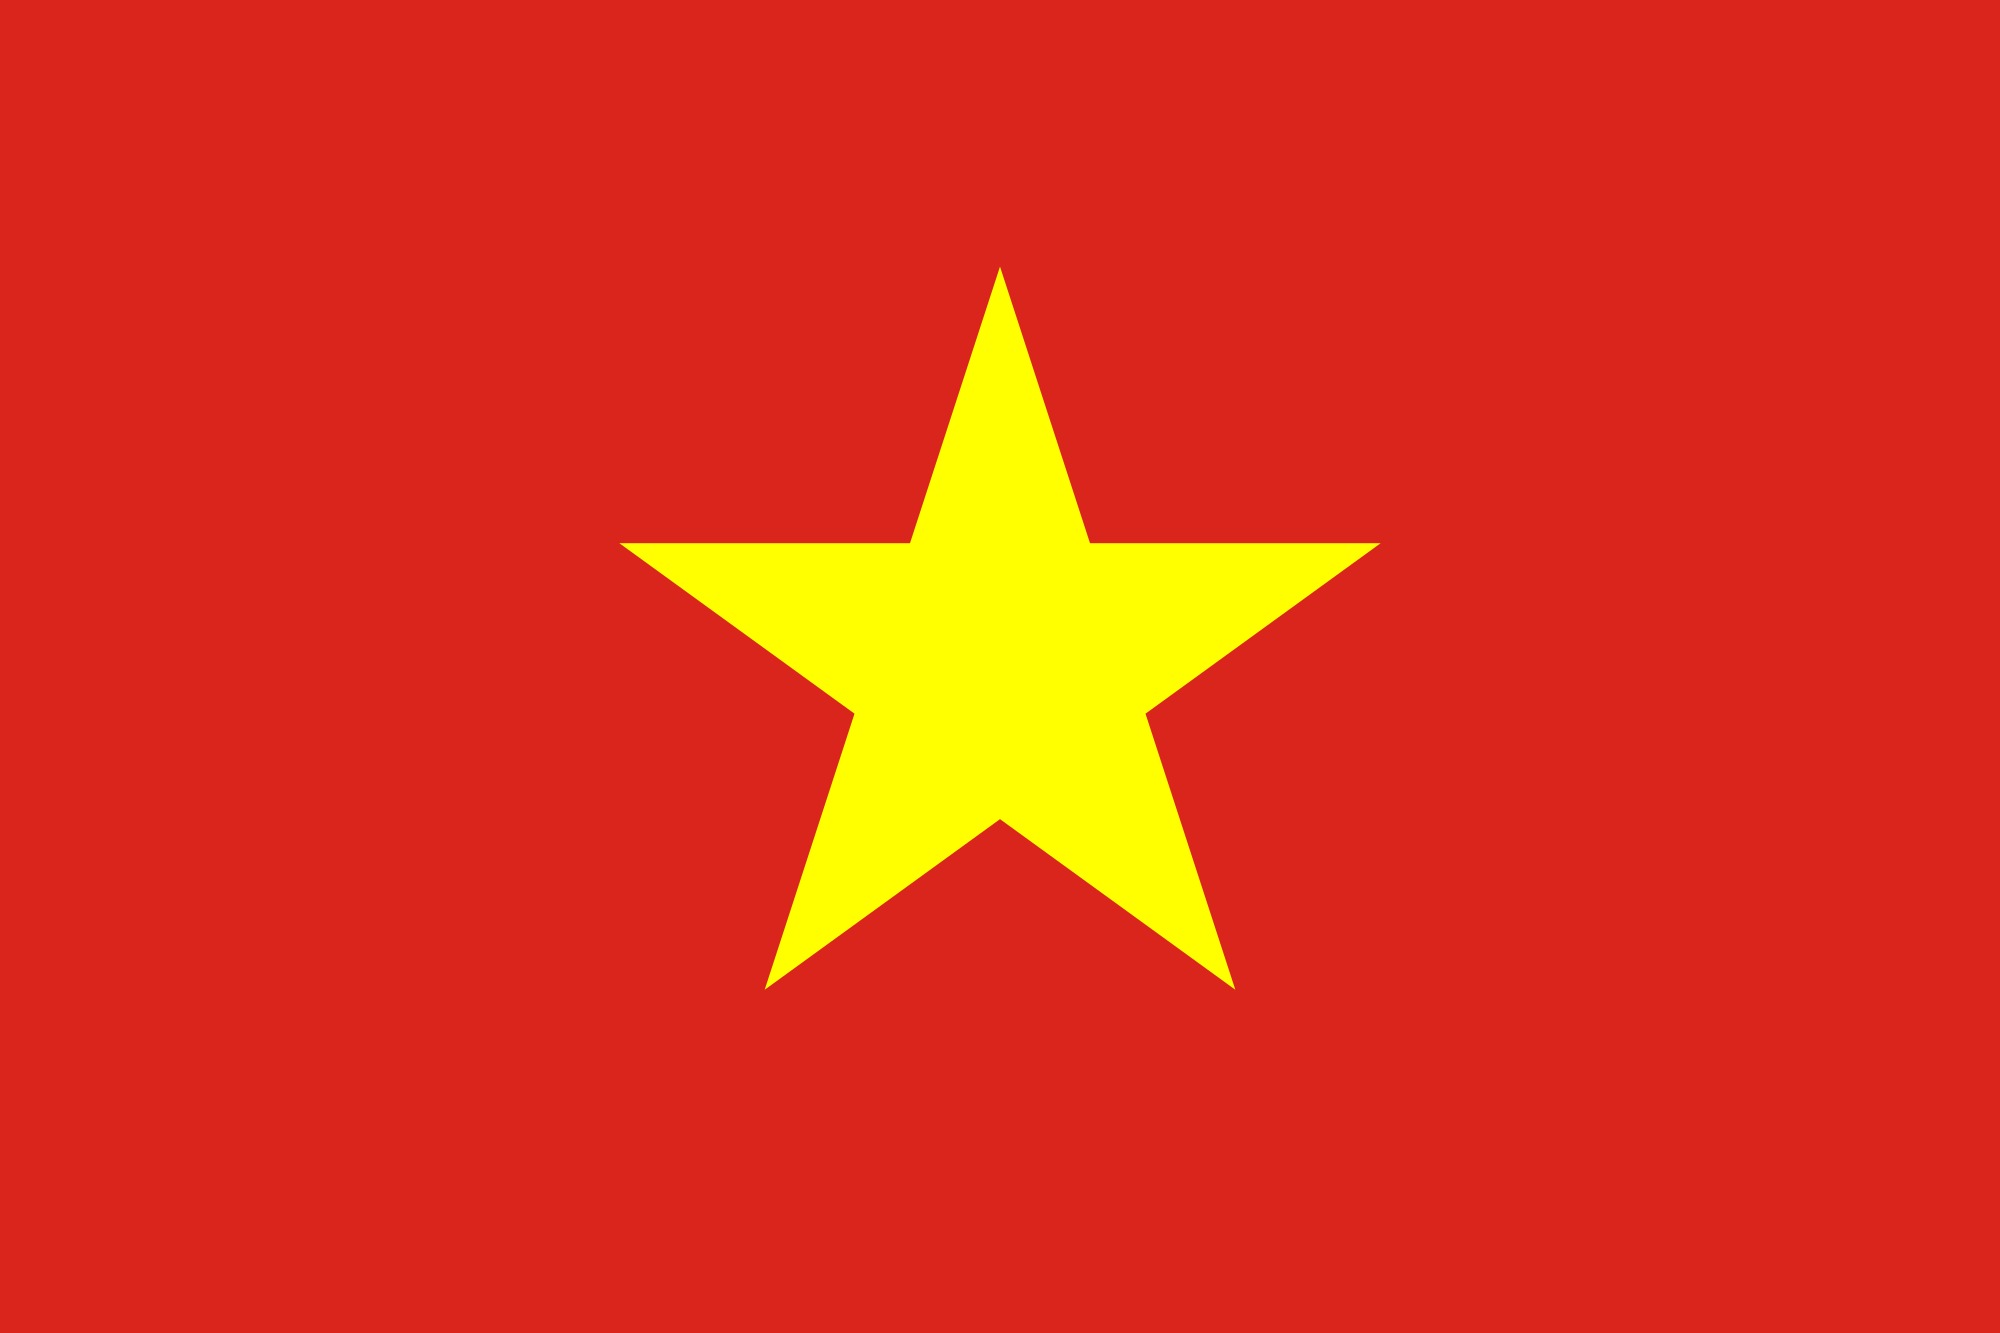 Ý nghĩa quốc kỳ Việt Nam
Quốc kỳ Việt Nam với màu sắc đỏ đen và ngôi sao vàng trên cùng trên nền đỏ đen thể hiện sự kiên trung và lòng yêu nước của người Việt Nam. Để hiểu rõ hơn về ý nghĩa của quốc kỳ này, bạn cần tìm hiểu về lịch sử và văn hóa của Việt Nam. Có rất nhiều địa điểm du lịch tại Việt Nam có thể giúp bạn khám phá về quốc kỳ và đất nước Việt Nam.